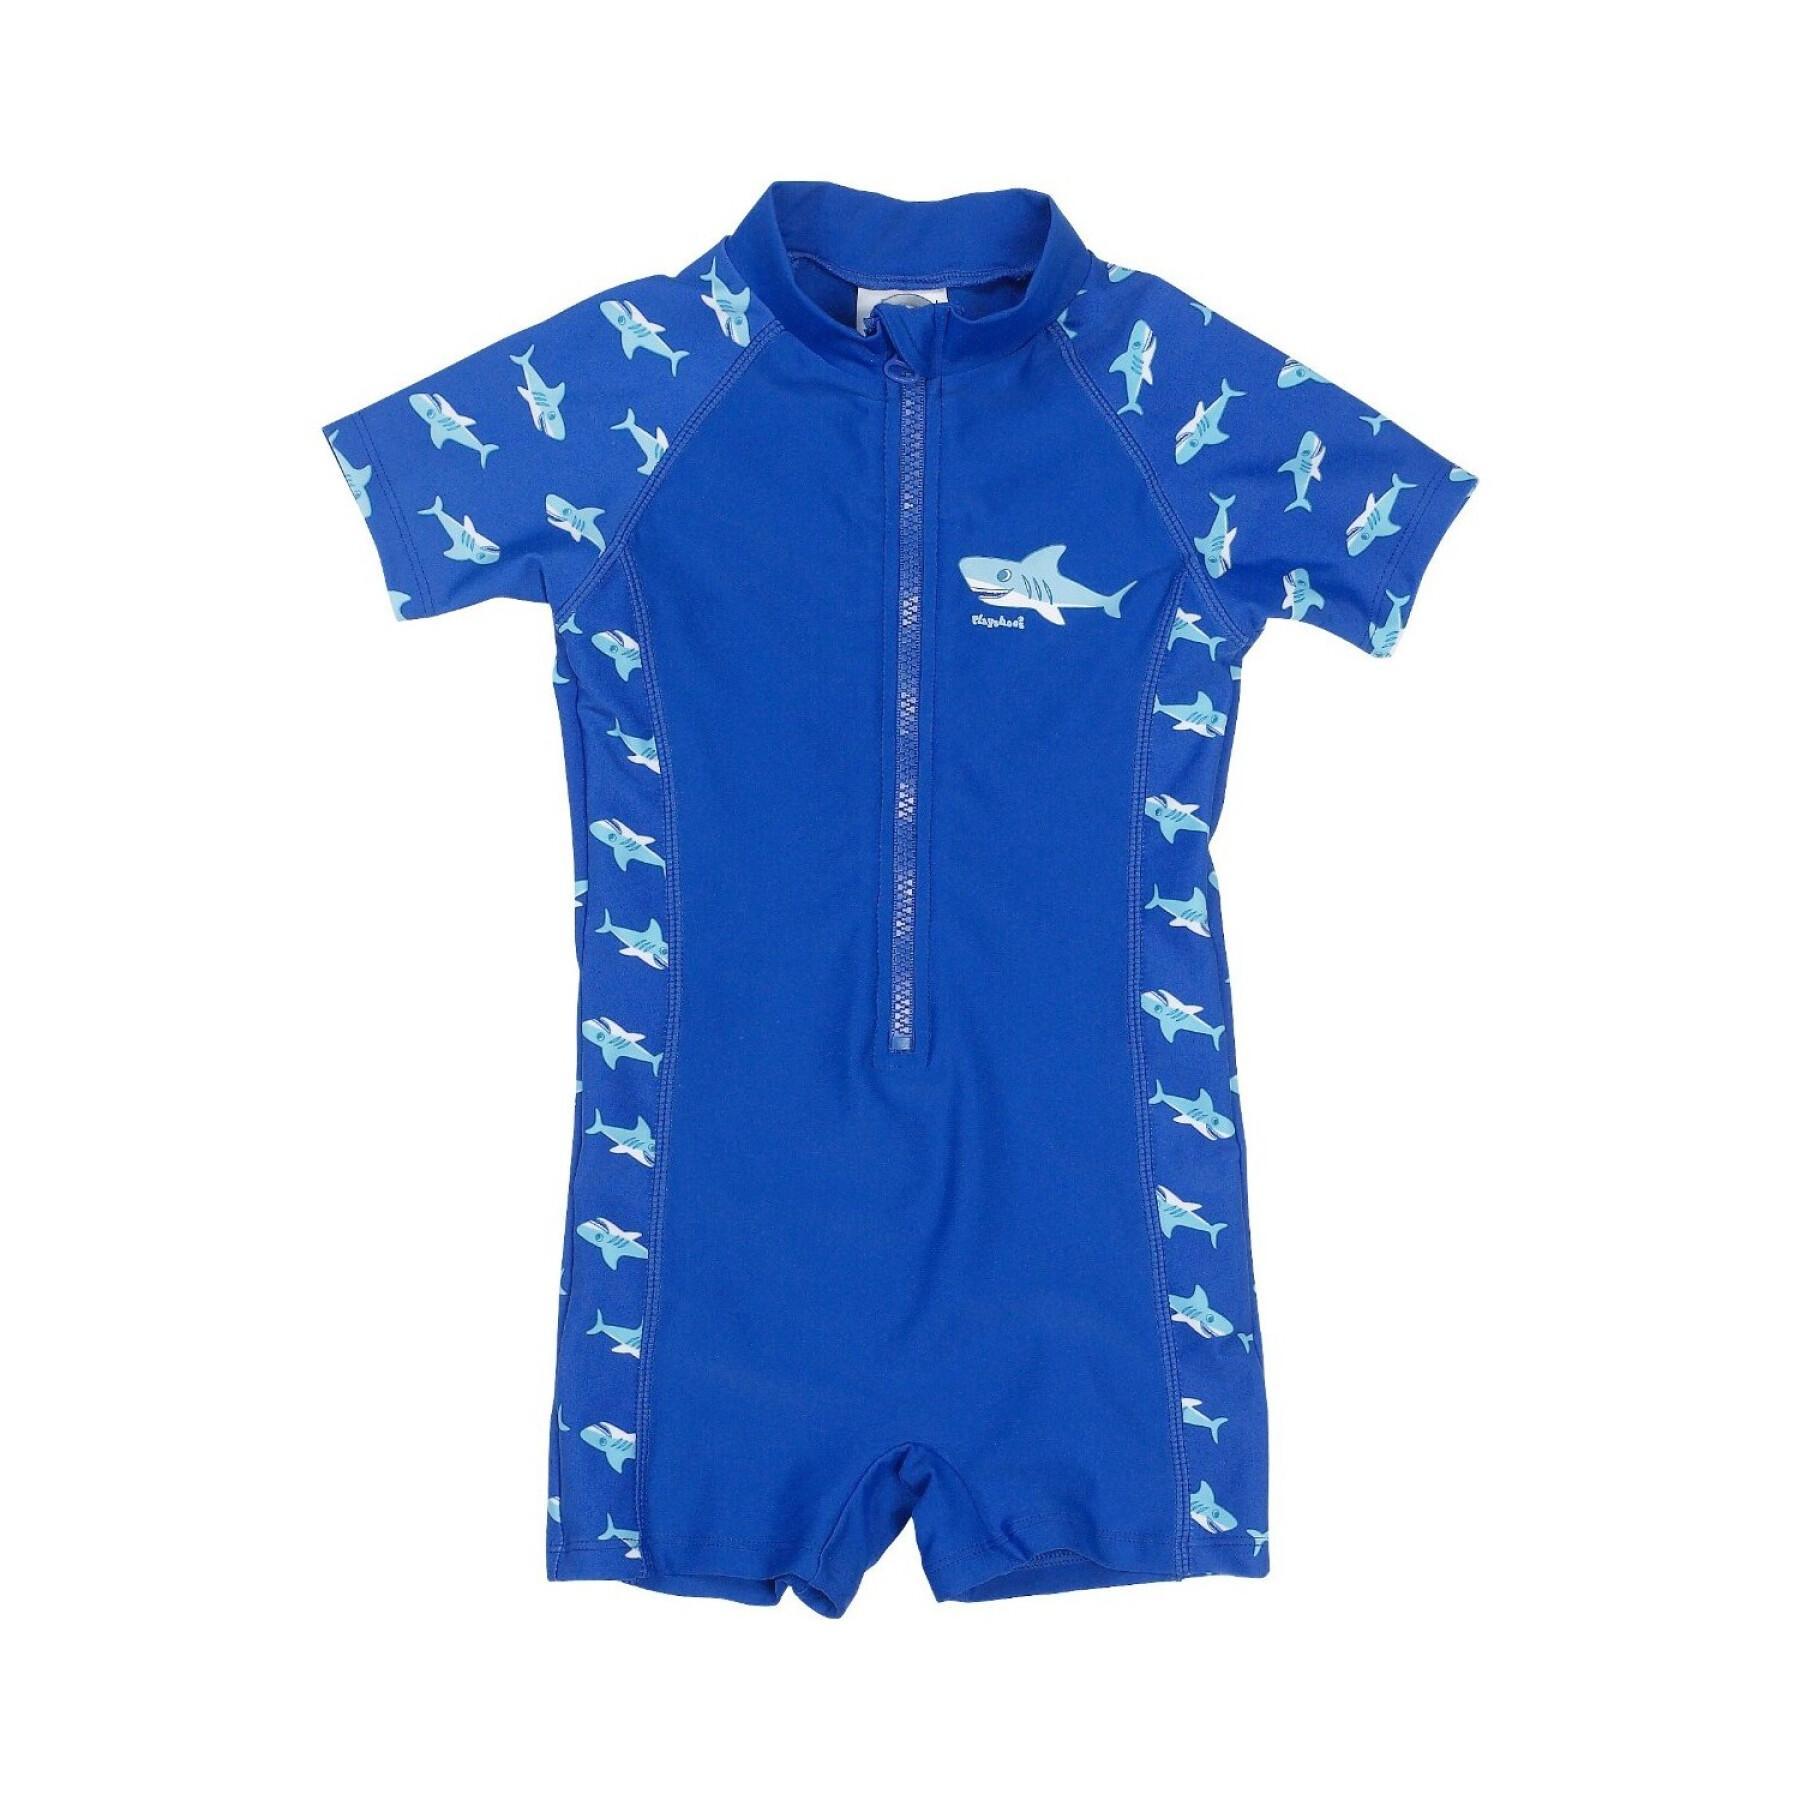 Badeanzug mit UV-Schutz, Baby Playshoes Shark